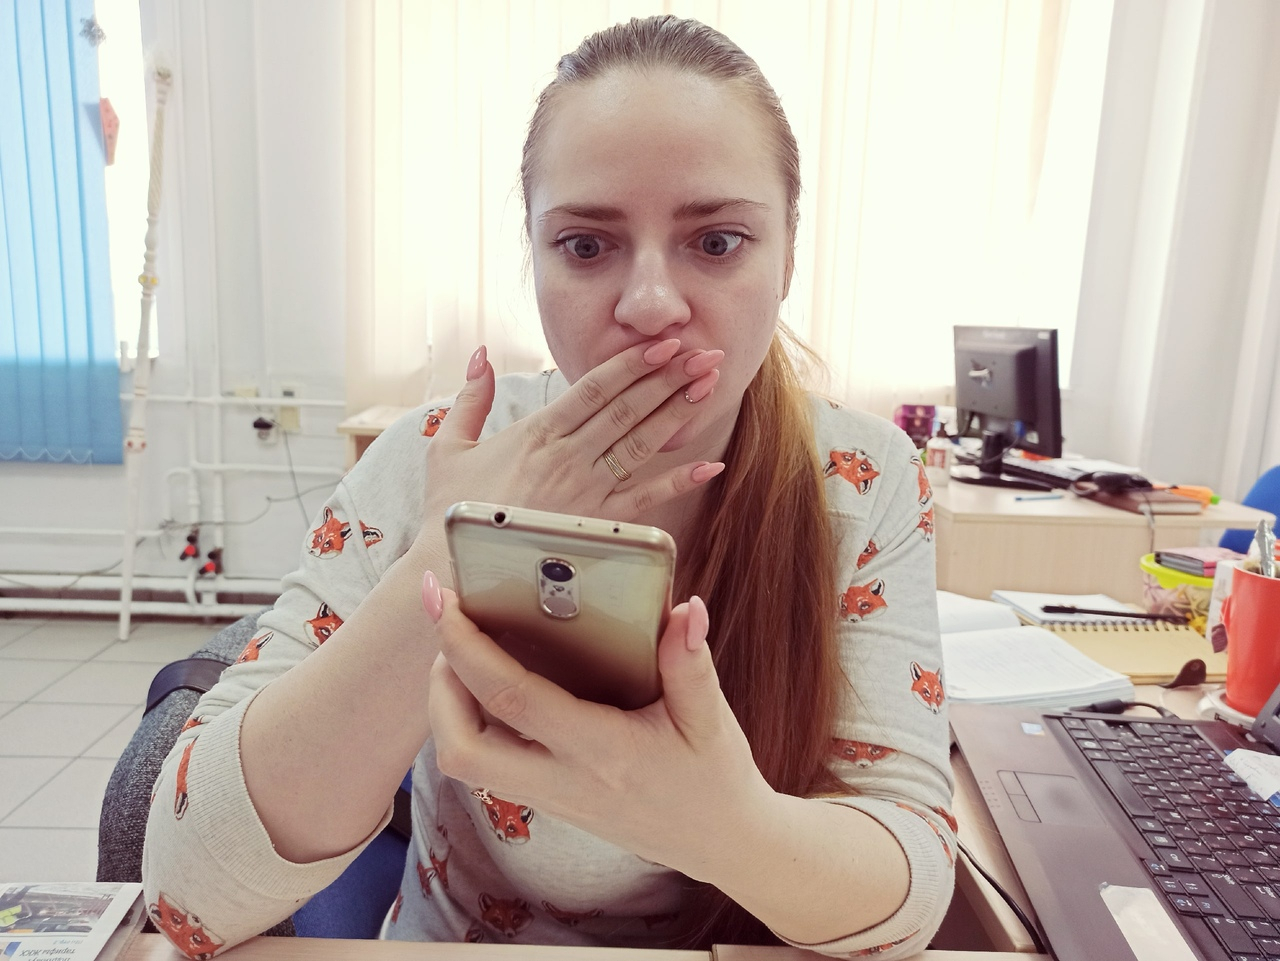 Срочно обновите: ярославцев предупреждают об опасном приложении на мобильный